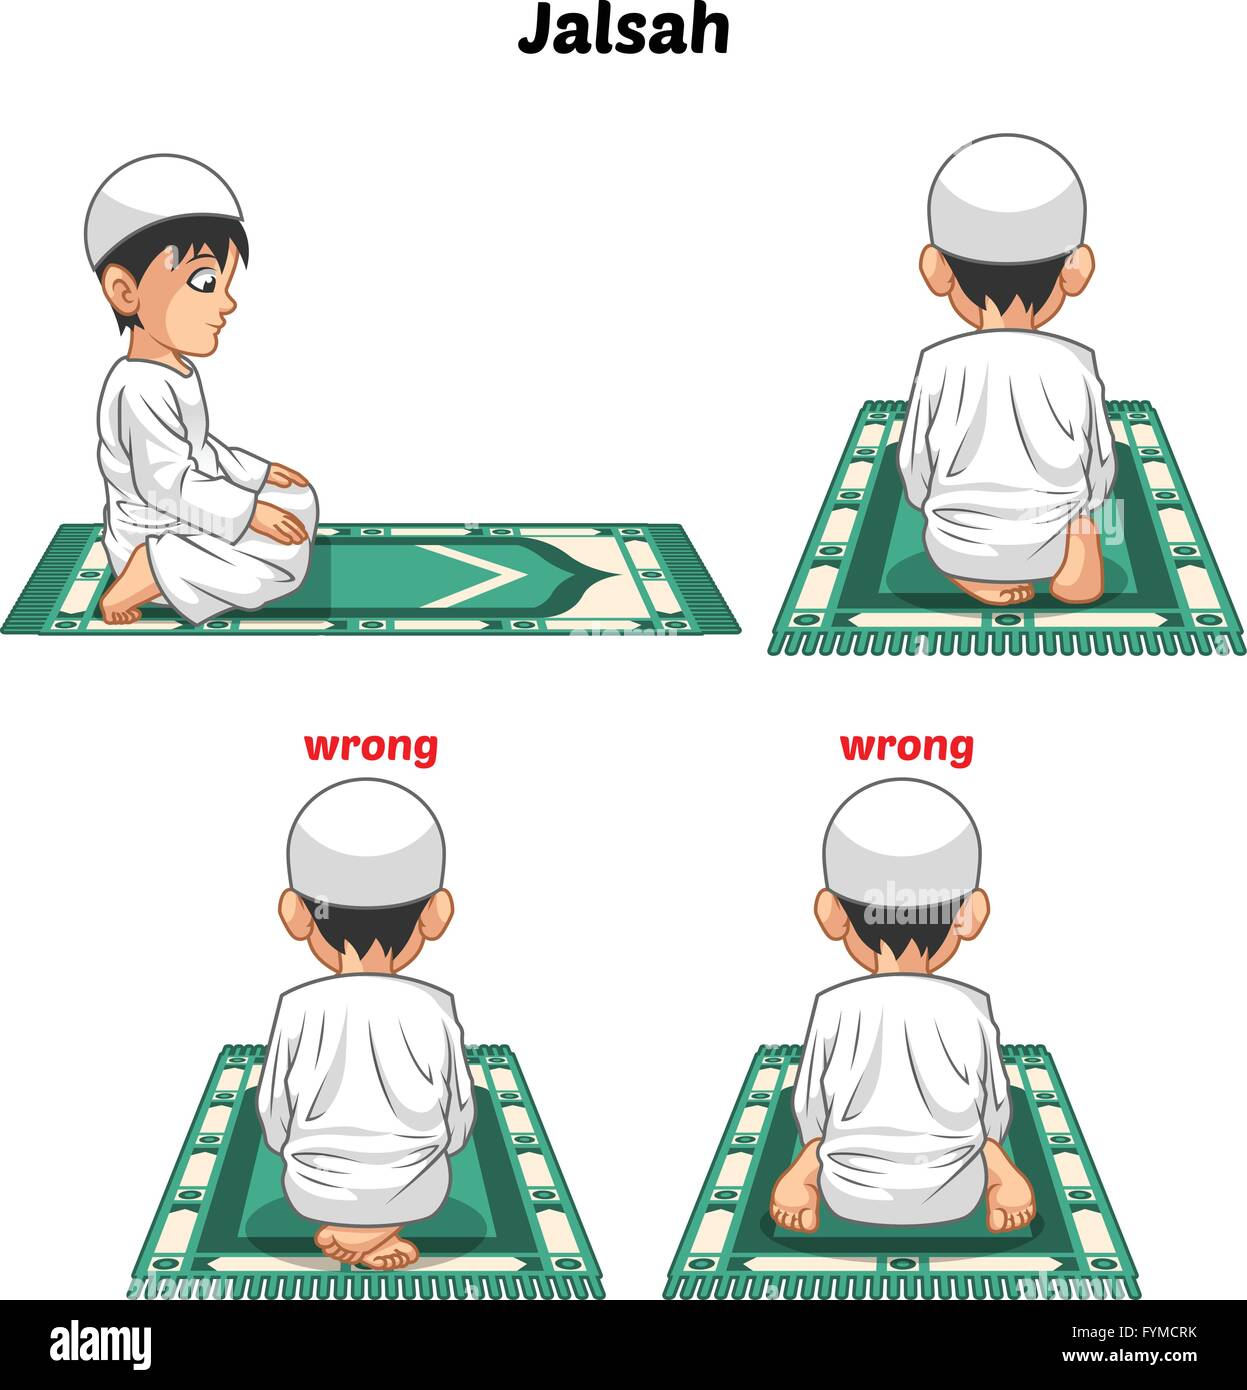 Position de la prière musulmane Guide Step by Step effectuer par garçon assis entre les deux en se prosternant et position des pieds avec de mauvais Illustration de Vecteur